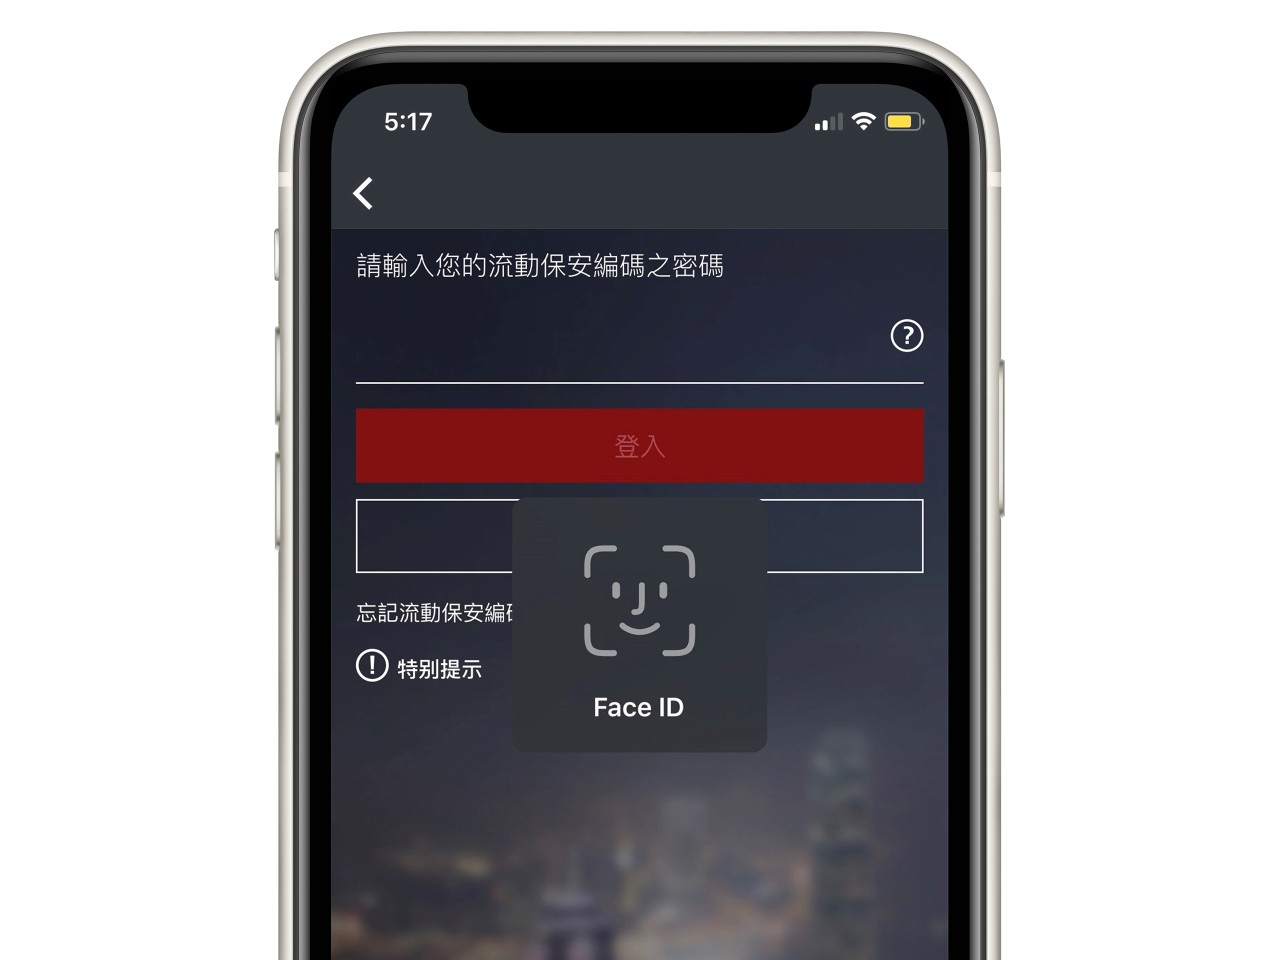 香港滙豐流動理財應用程式畫面截圖；顯示Face ID登入功能